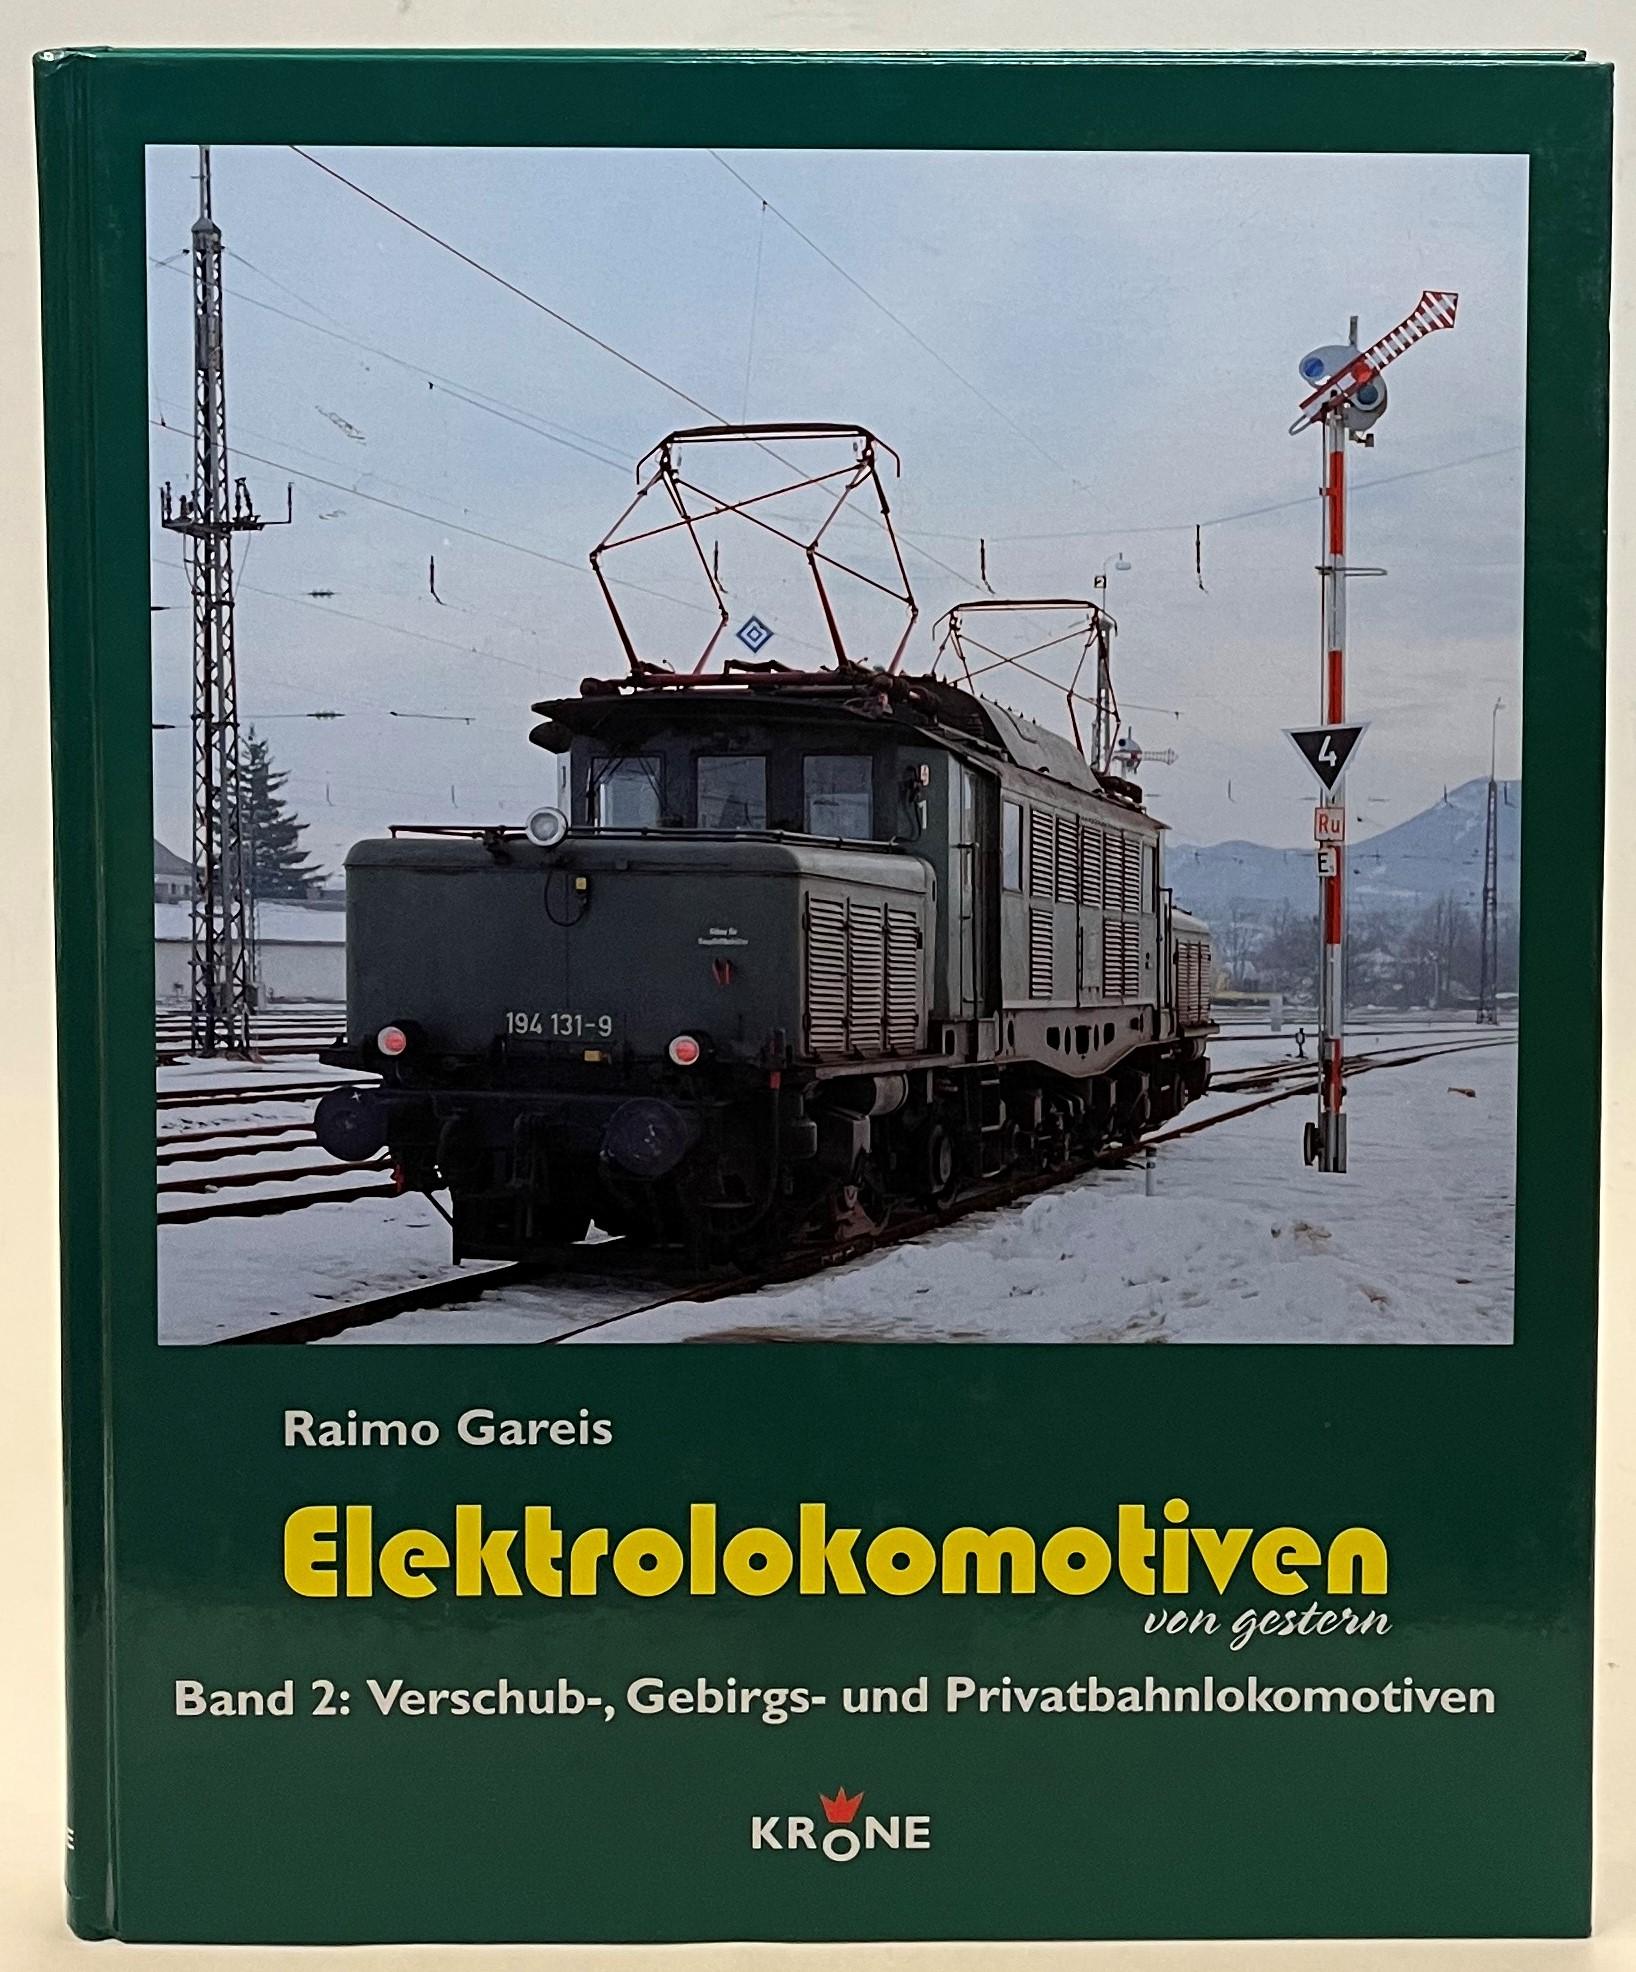 Elektrolokomotiven von gestern. Band 2: Verschub-, Gebirgs- und Privatbahnlokomotiven - Gareis, Raimo